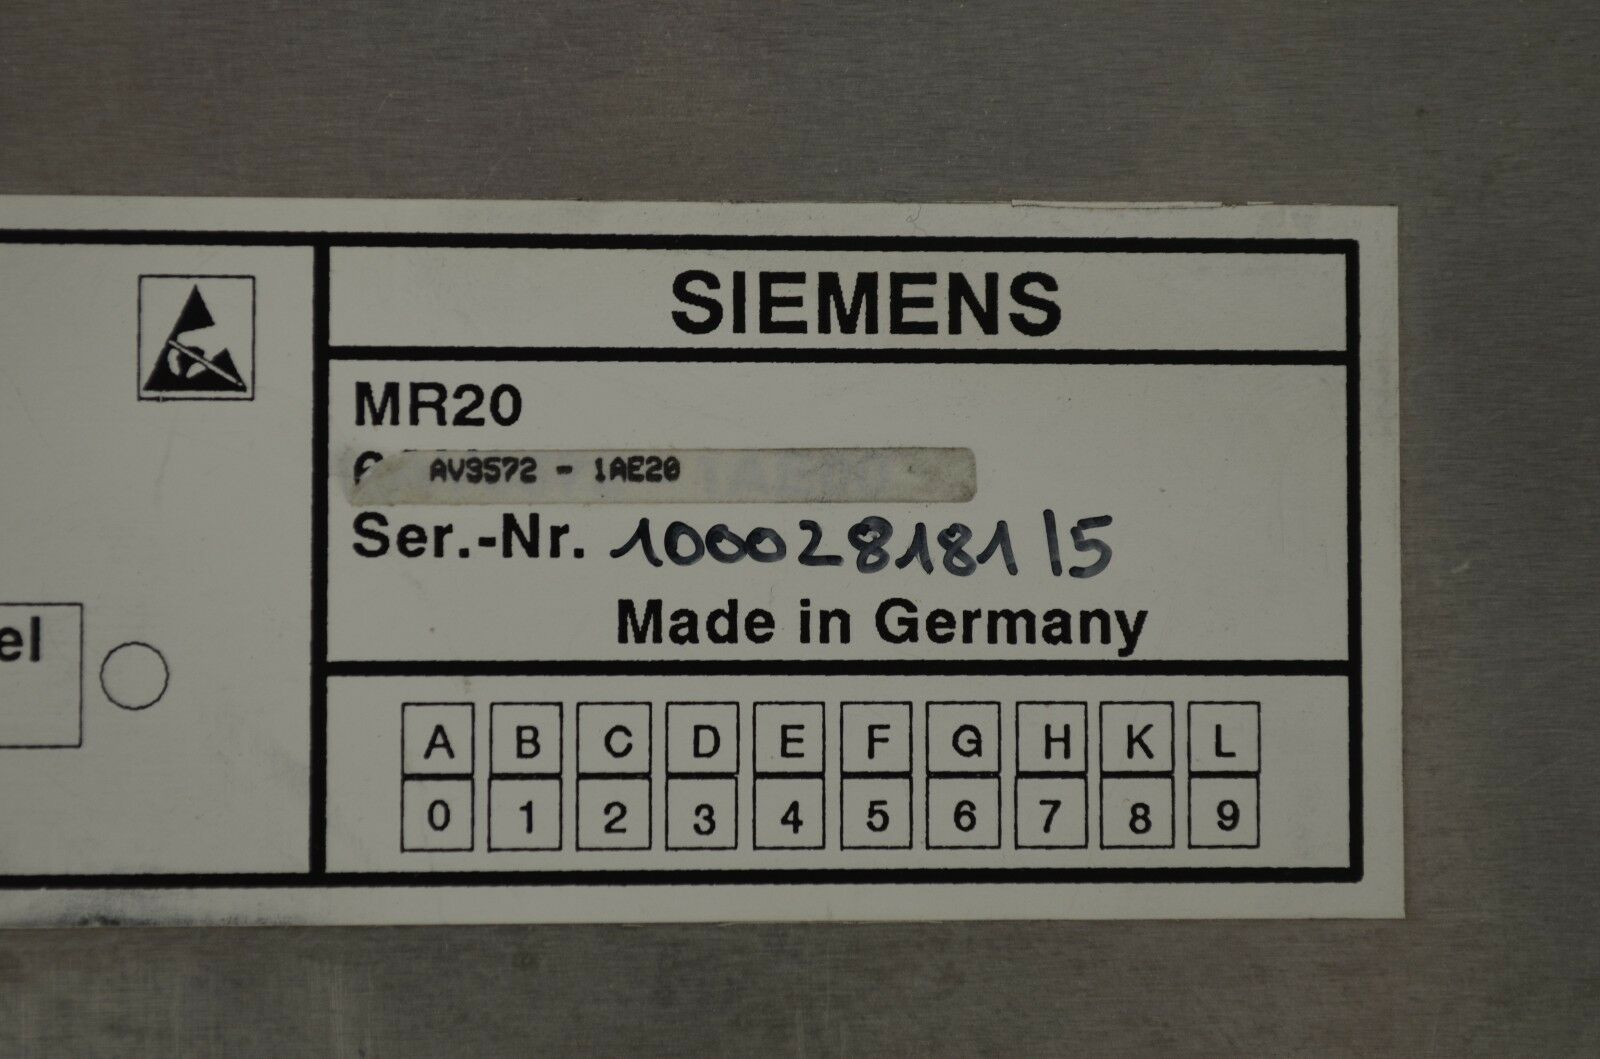 Siemens MR20 6AV3572-1AE20 